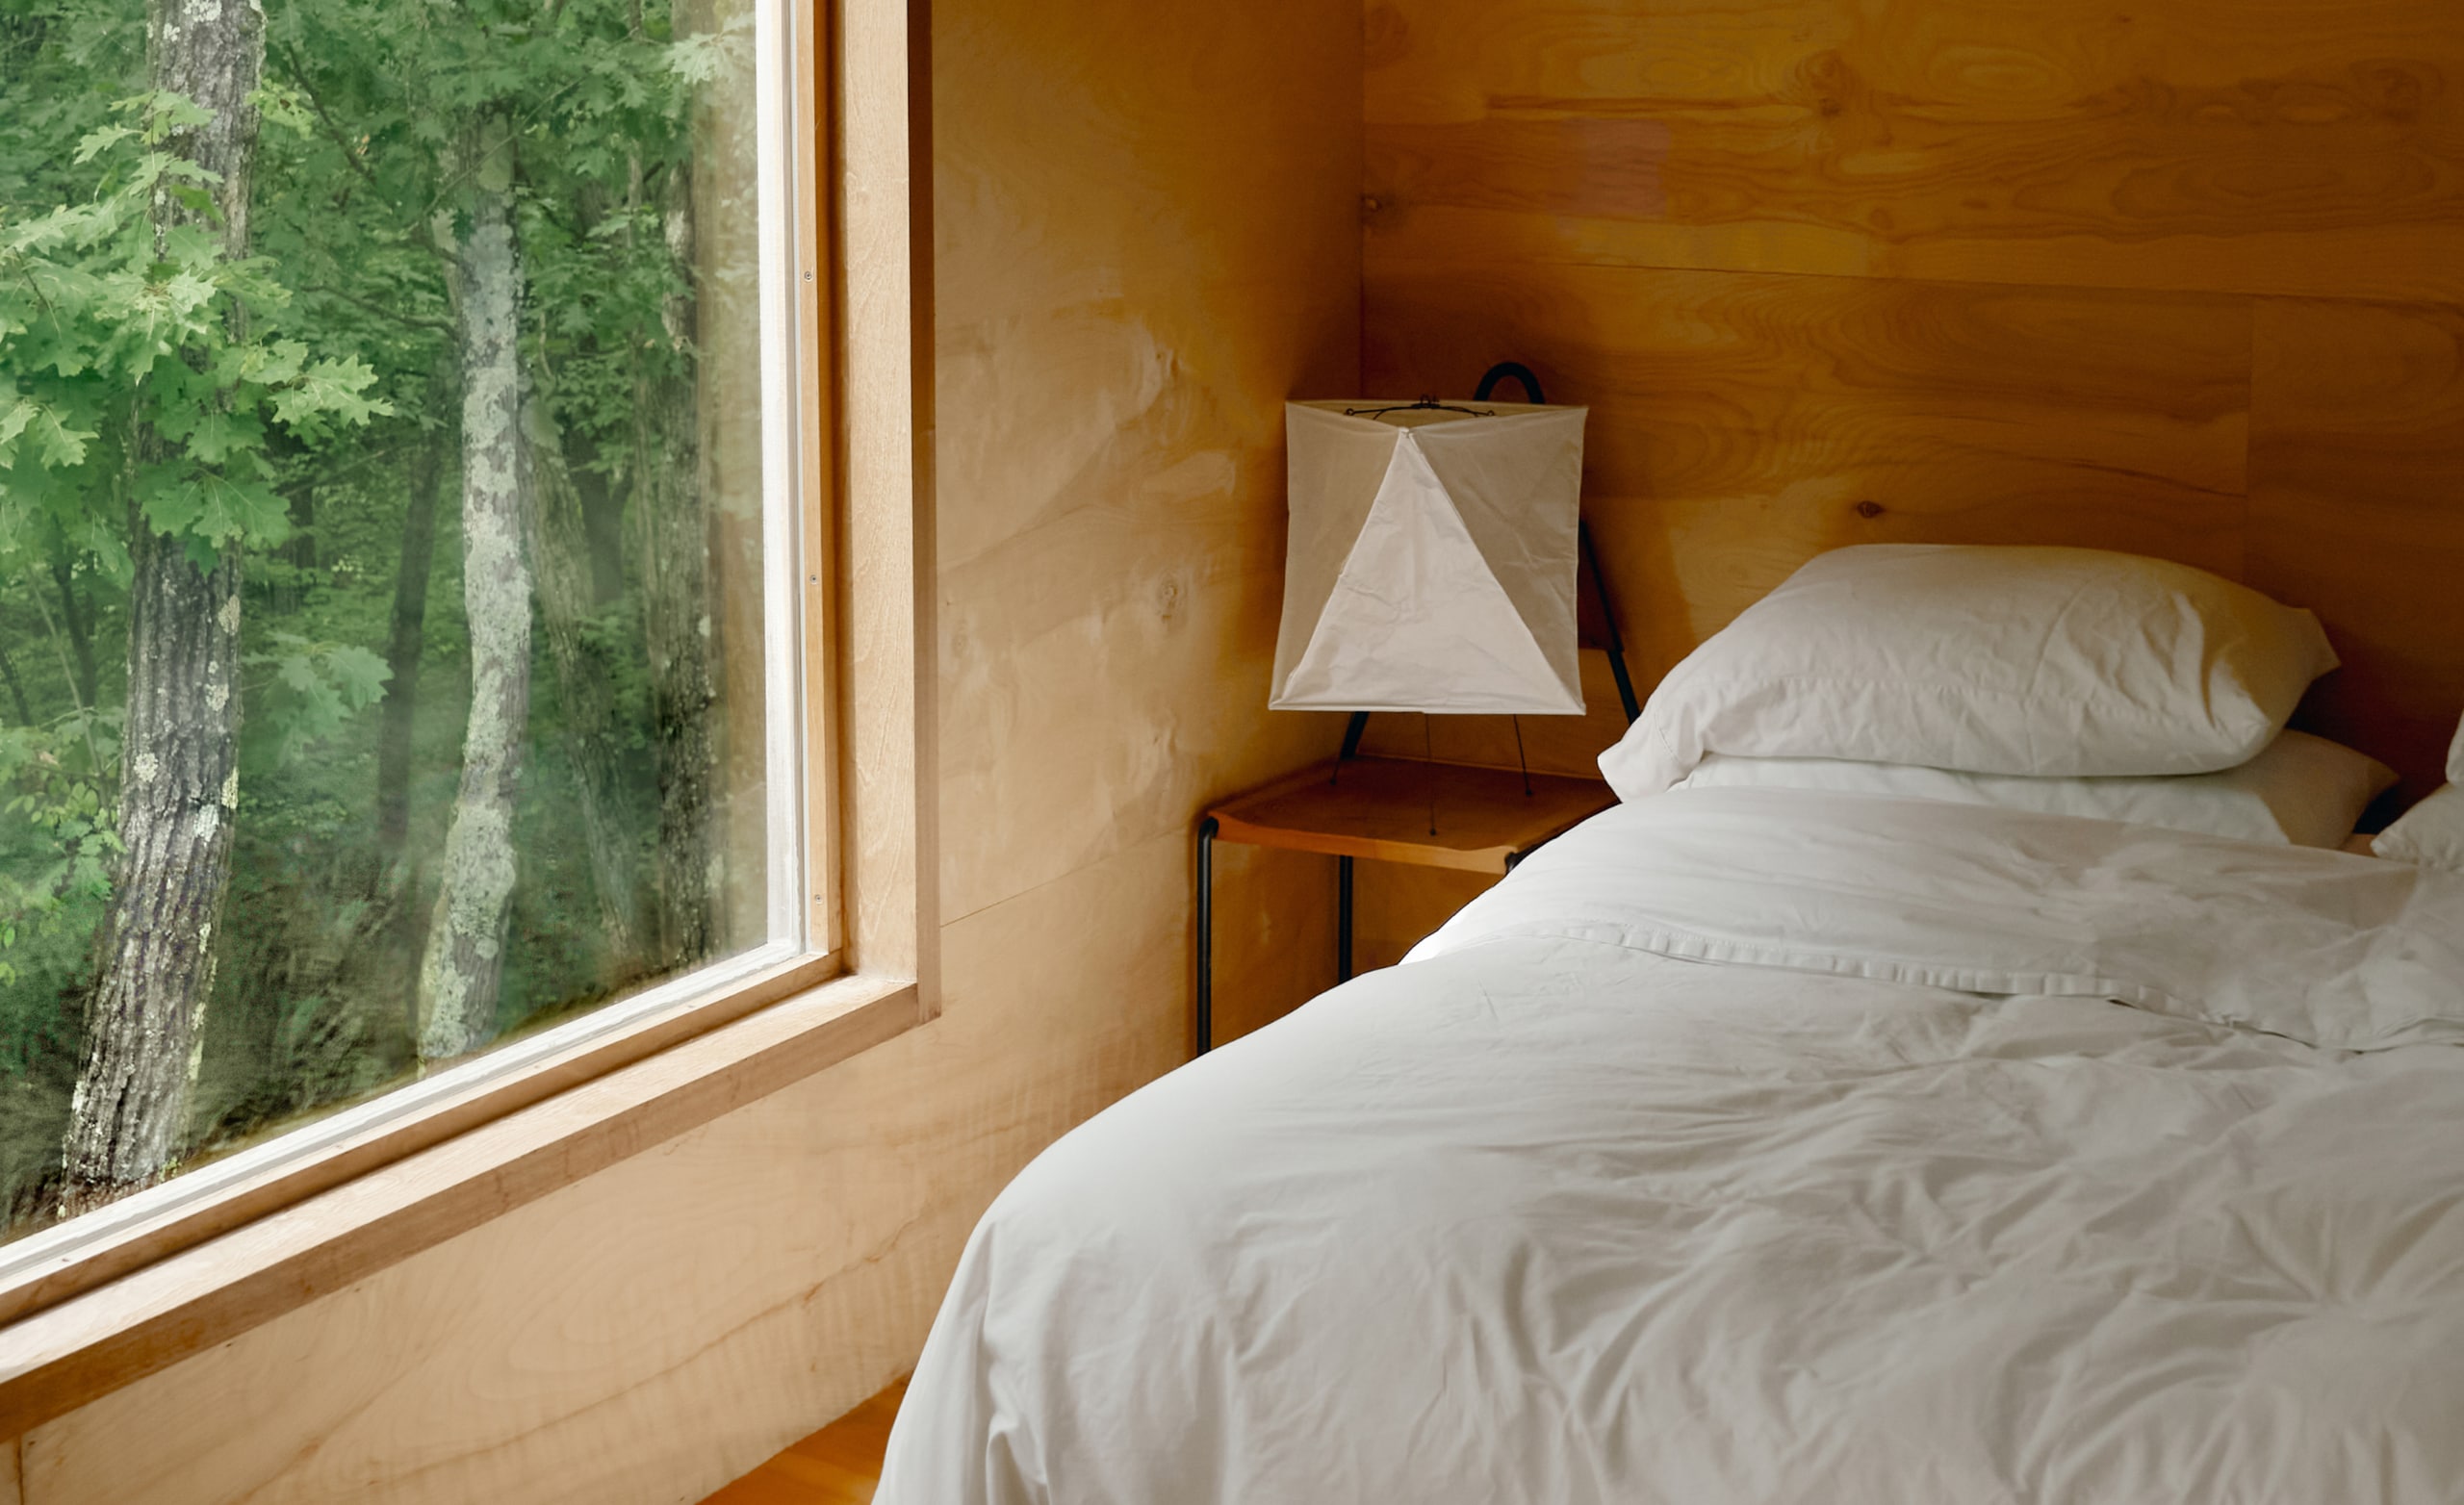 Et soveværelse med hvidt sengetøj på en nyligt redt seng og et stort vindue med træer udenfor.